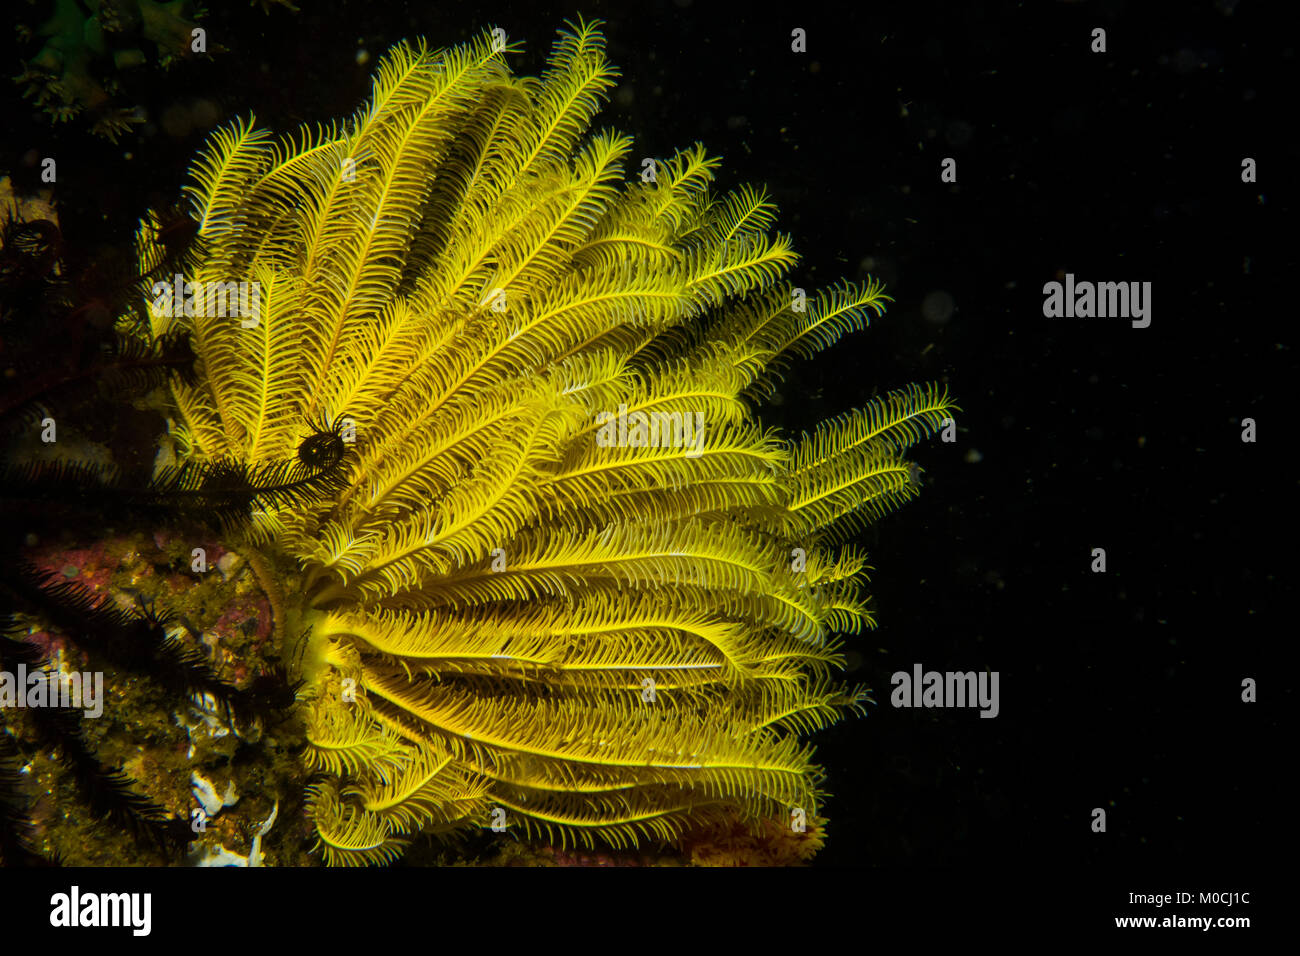 Sous l'eau, Anilao, Philippines, coralliens reef, crinoide Banque D'Images